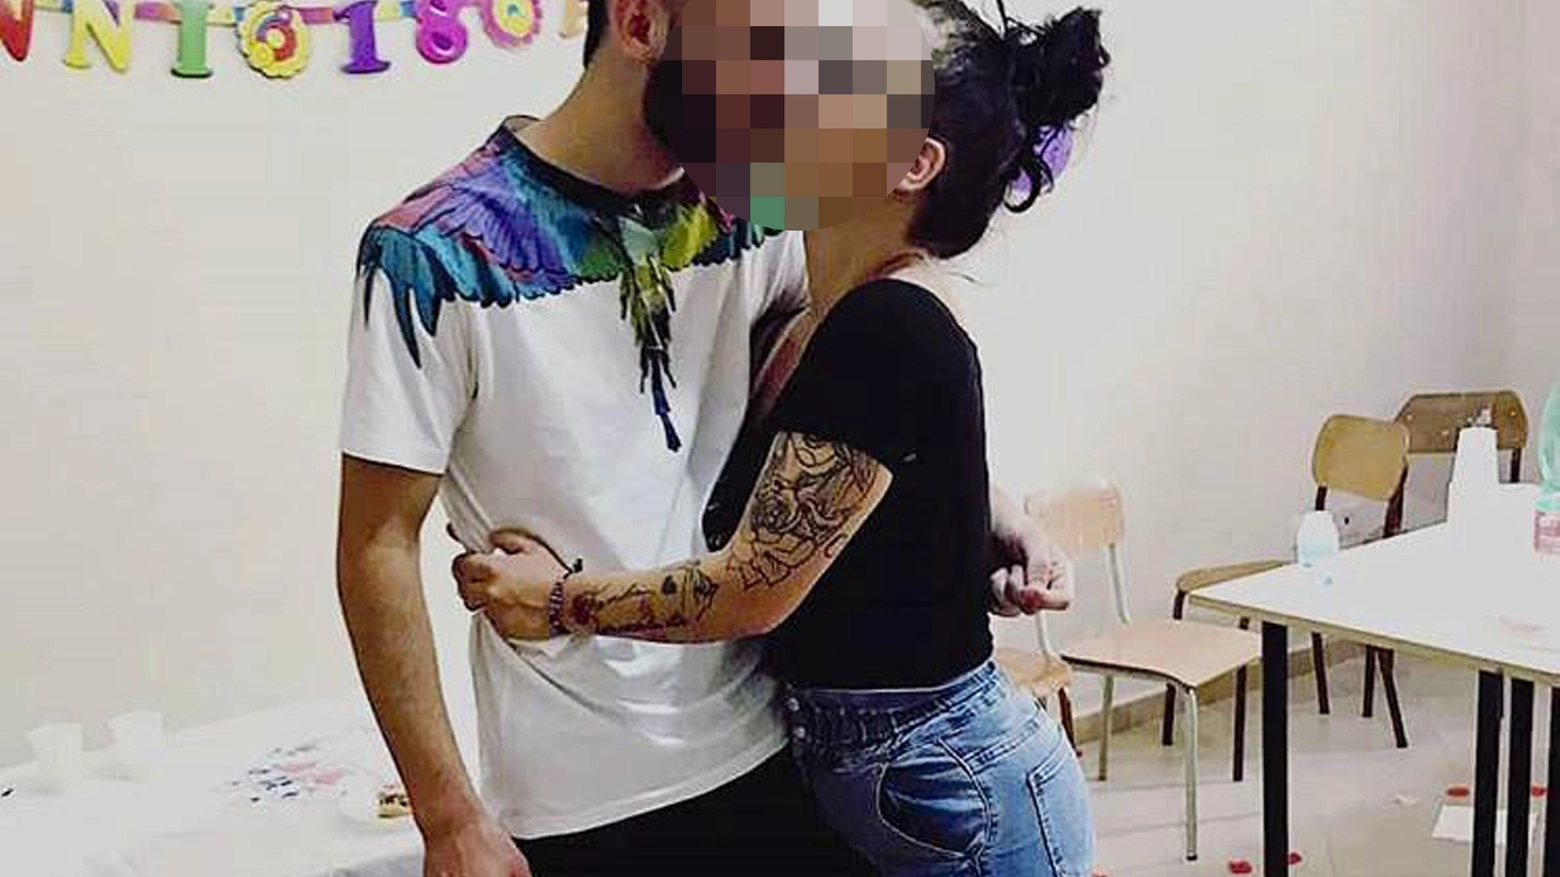 Baby killer festeggia i 18 anni con la fidanzata (da Instagram)